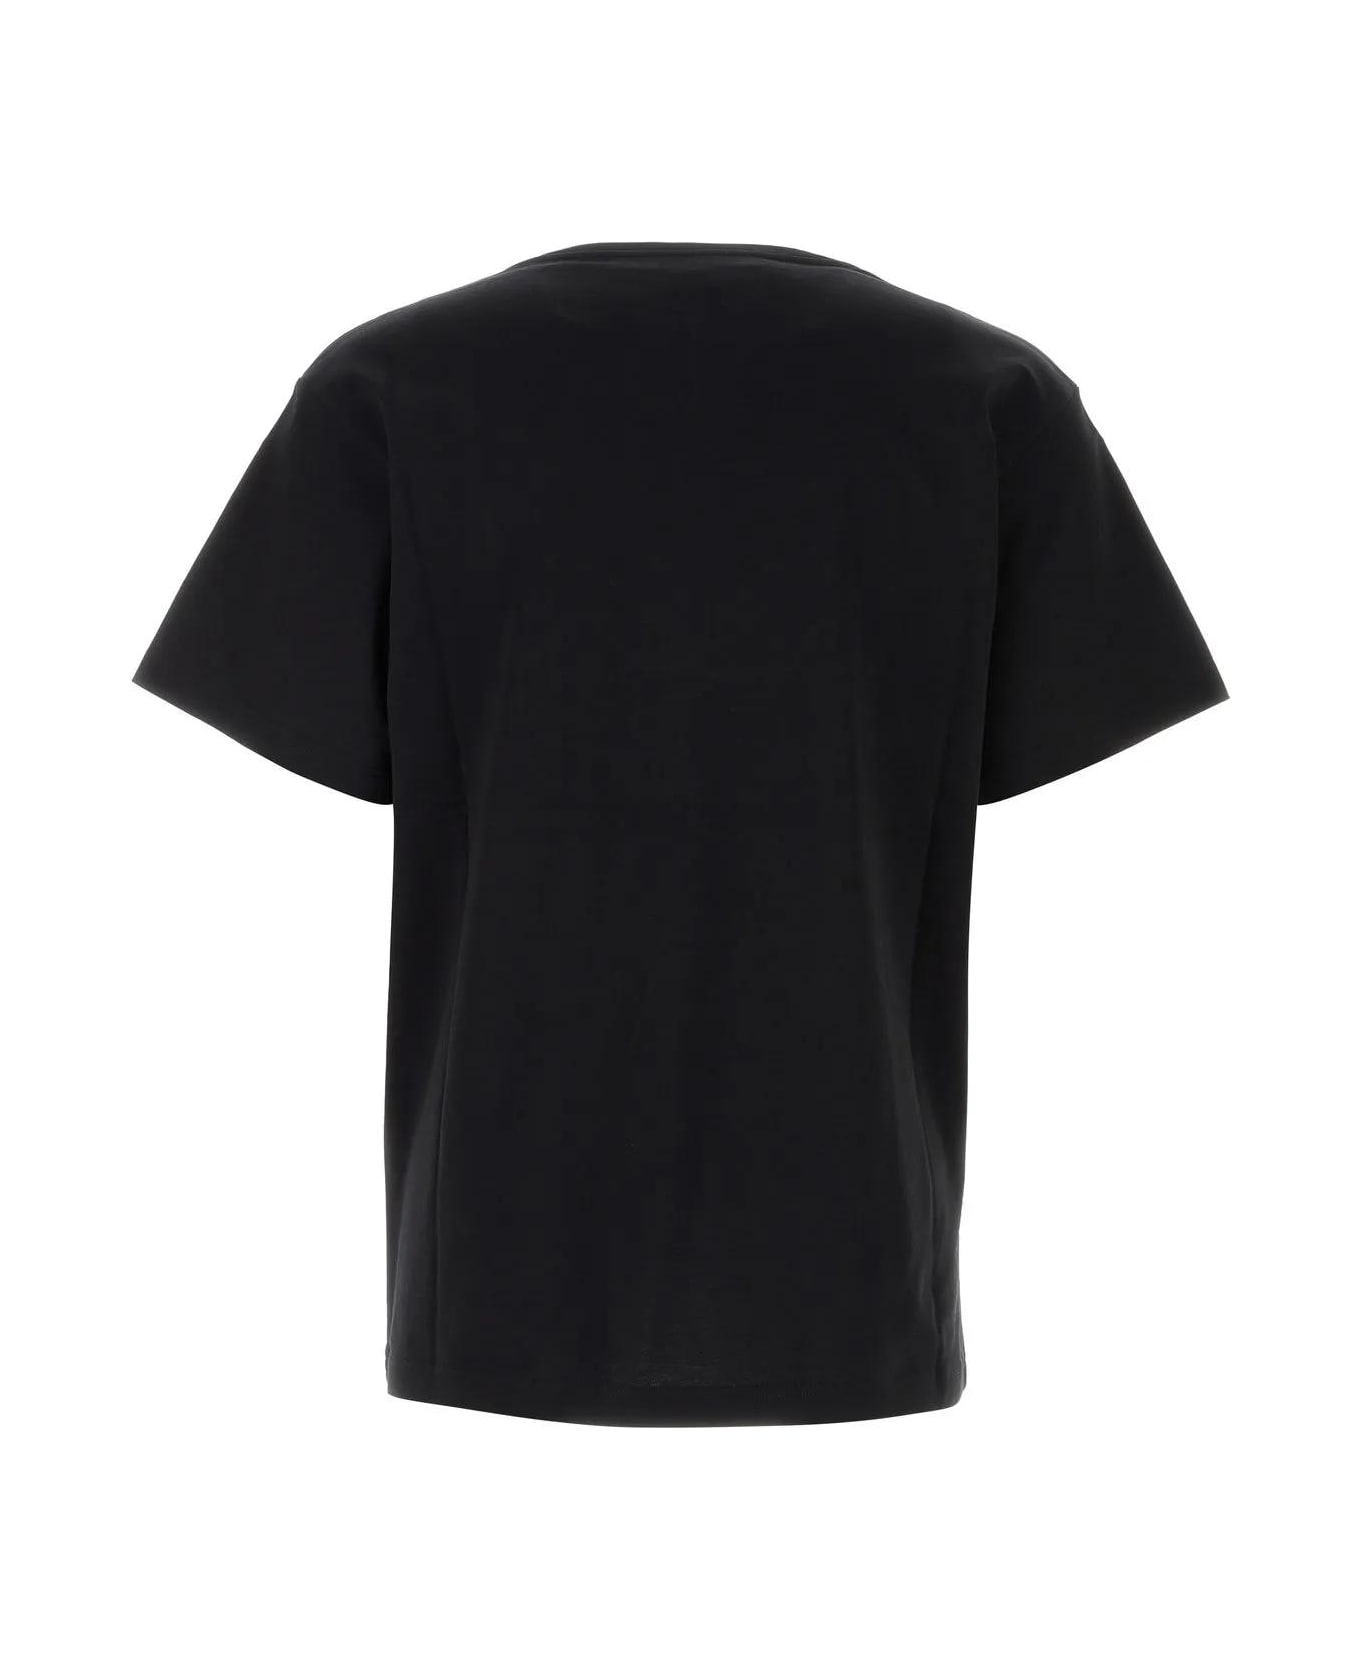 Y/Project Black Cotton T-shirt - BLACK シャツ